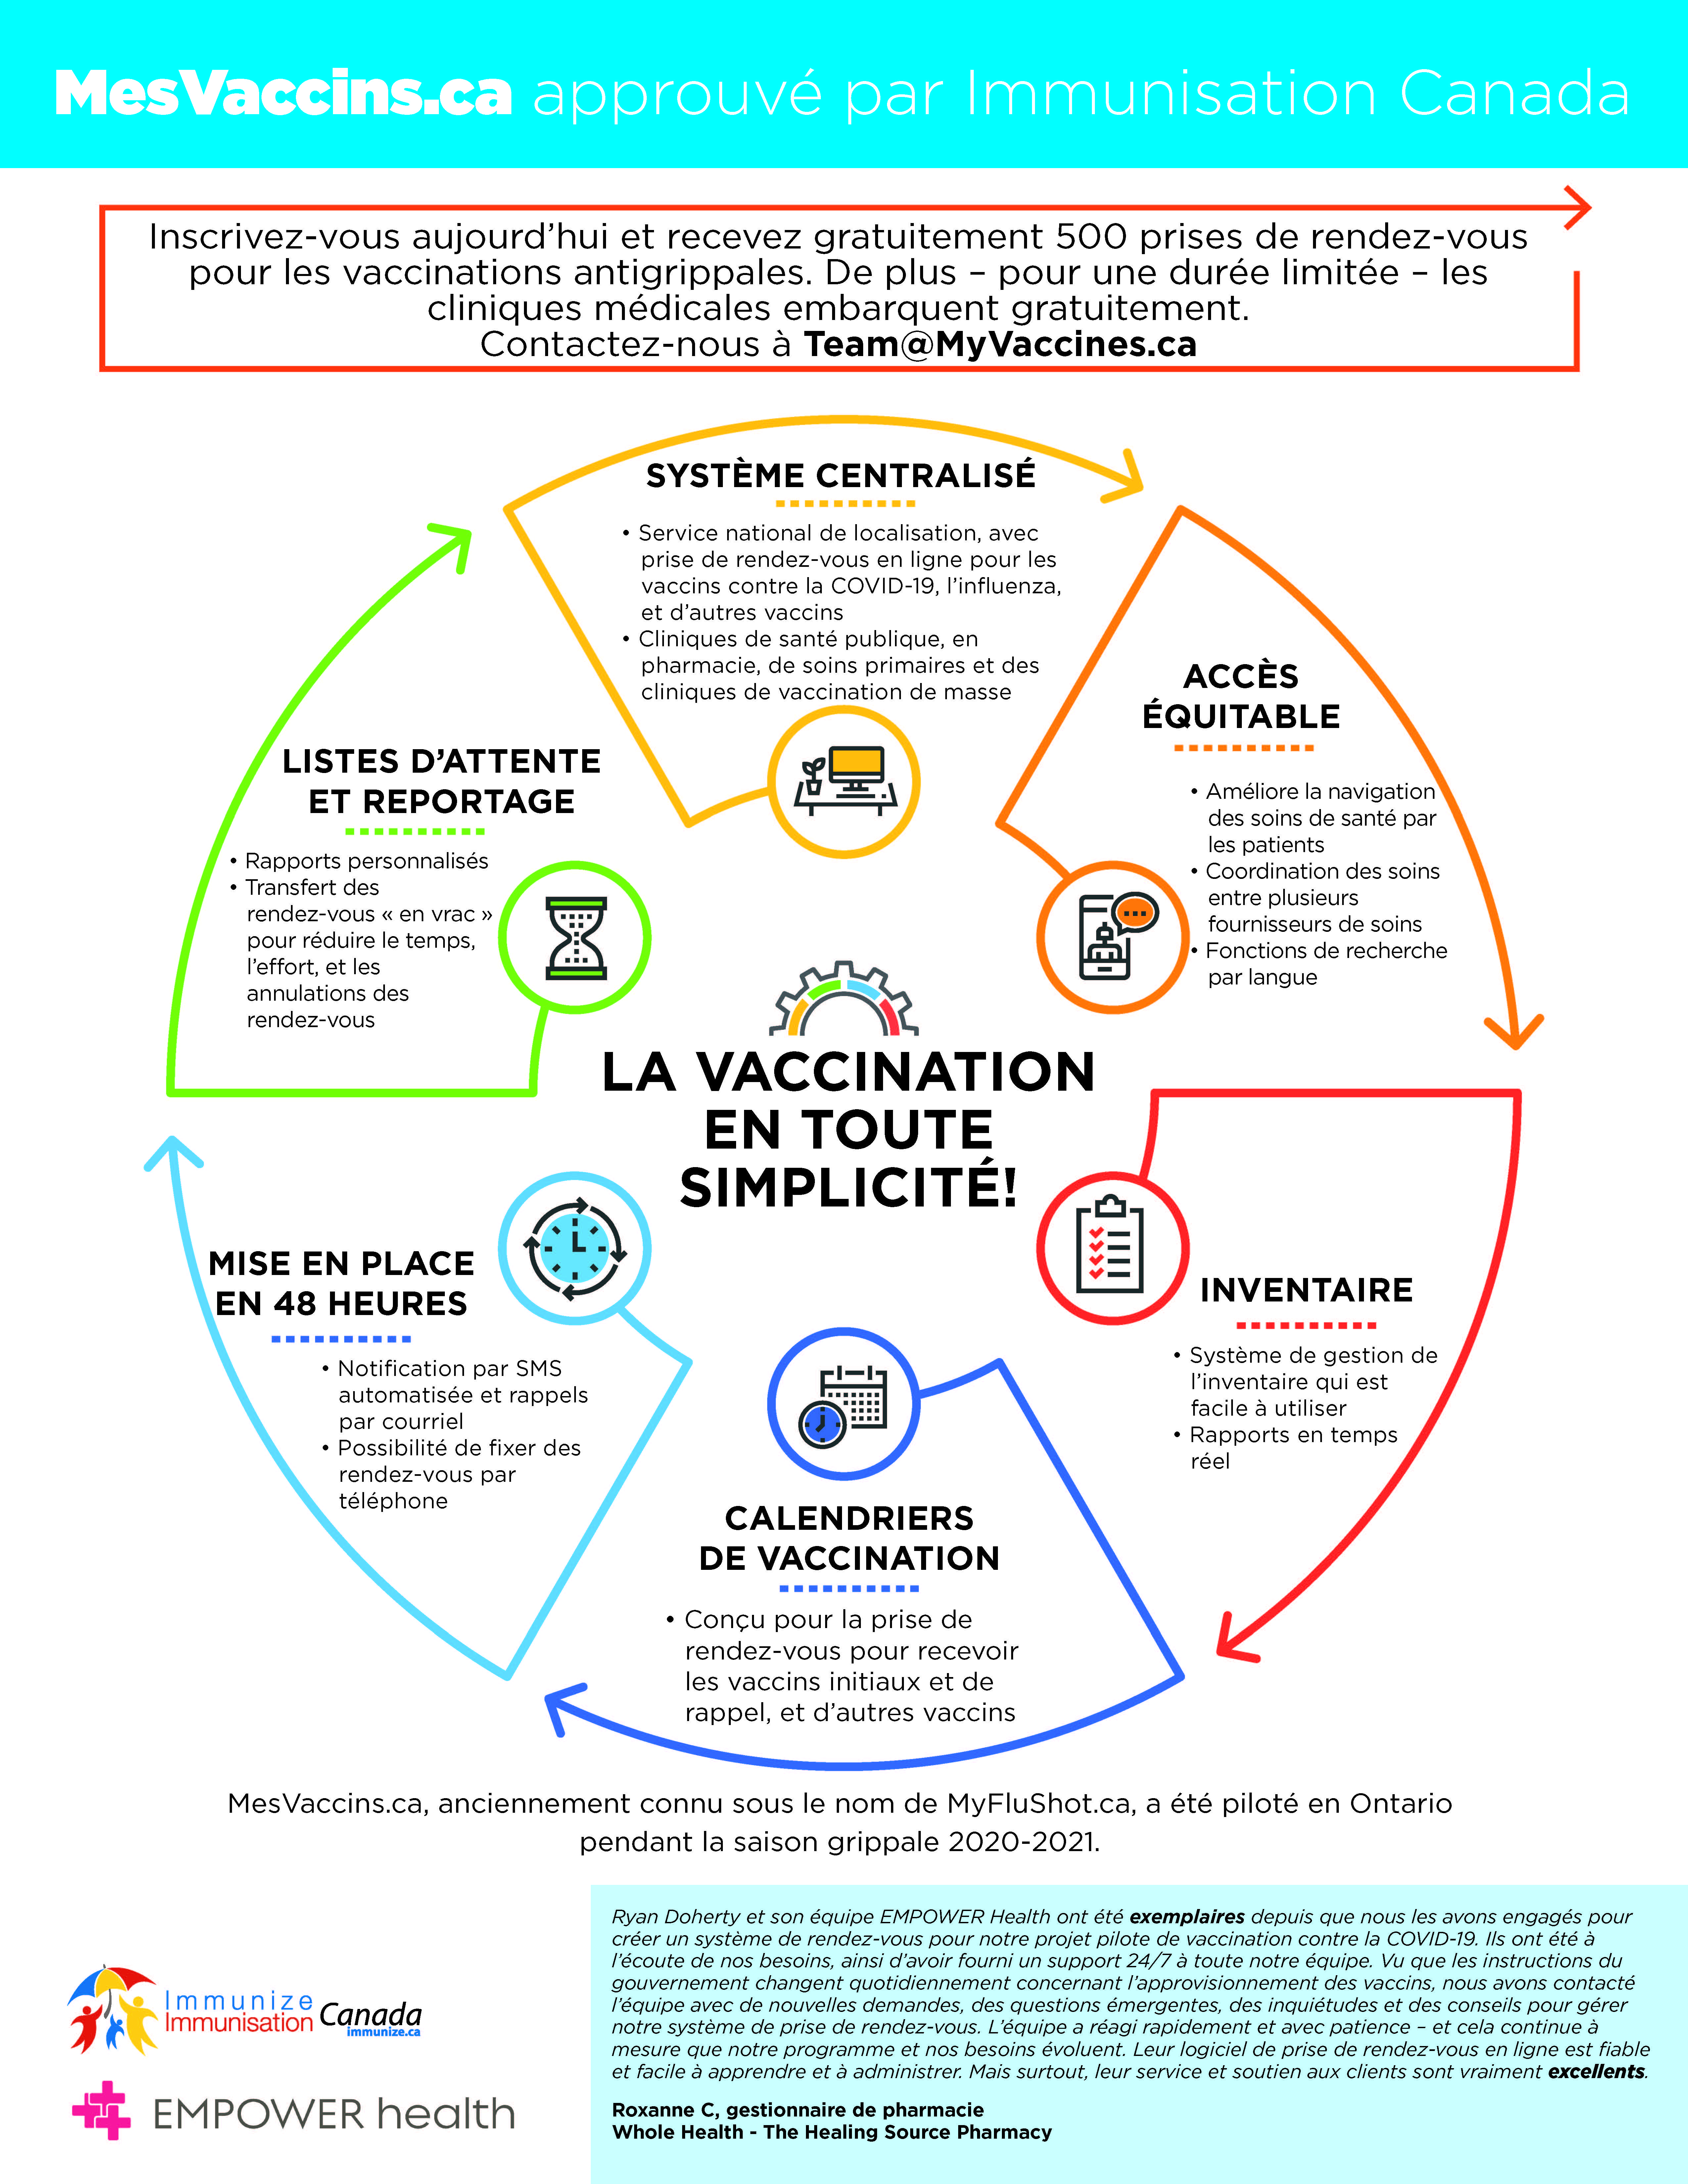 La vaccination en toute simplicité